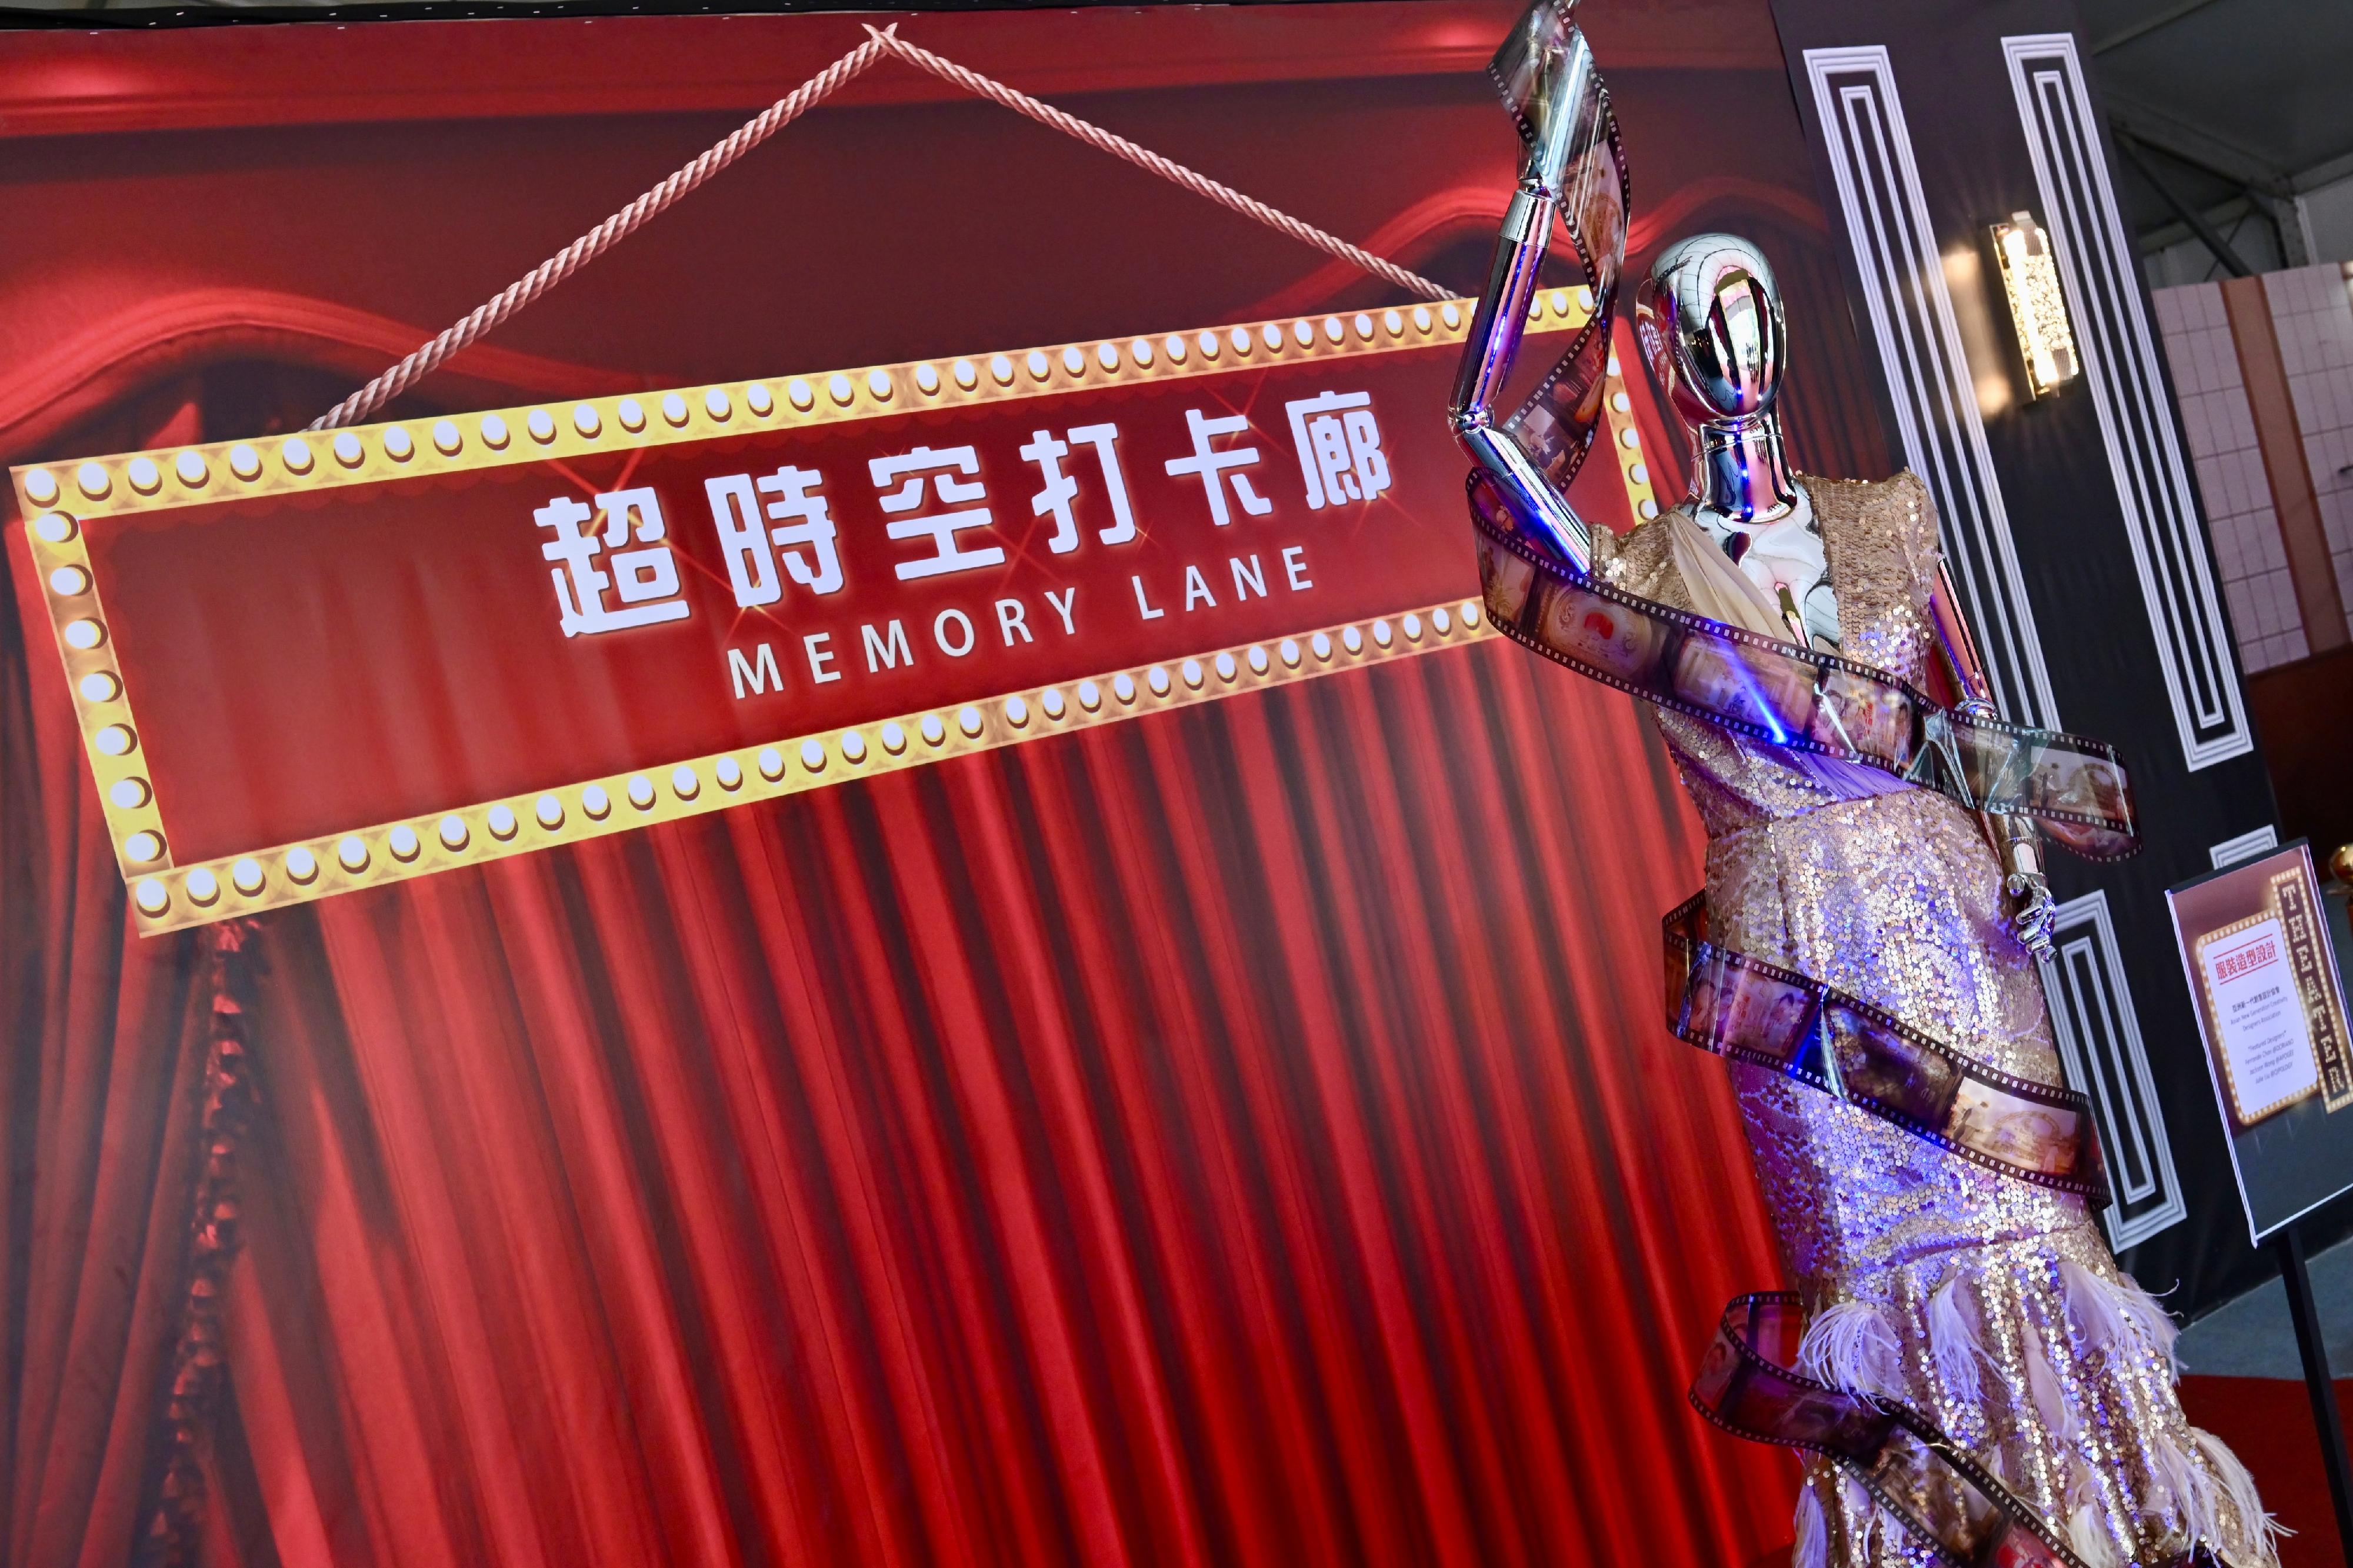 康乐及文化事务署主办的第二届「香港流行文化节」明日（四月六日）开幕。今年文化节的主题为「也文也武」，旨在带领大家穿梭古今，纵横文武，展示香港流行文化的多元魅力。图示开幕节目「天空草地」其中一个环节「超时空打卡廊」，让市民重游著名港产片的难忘场景。
